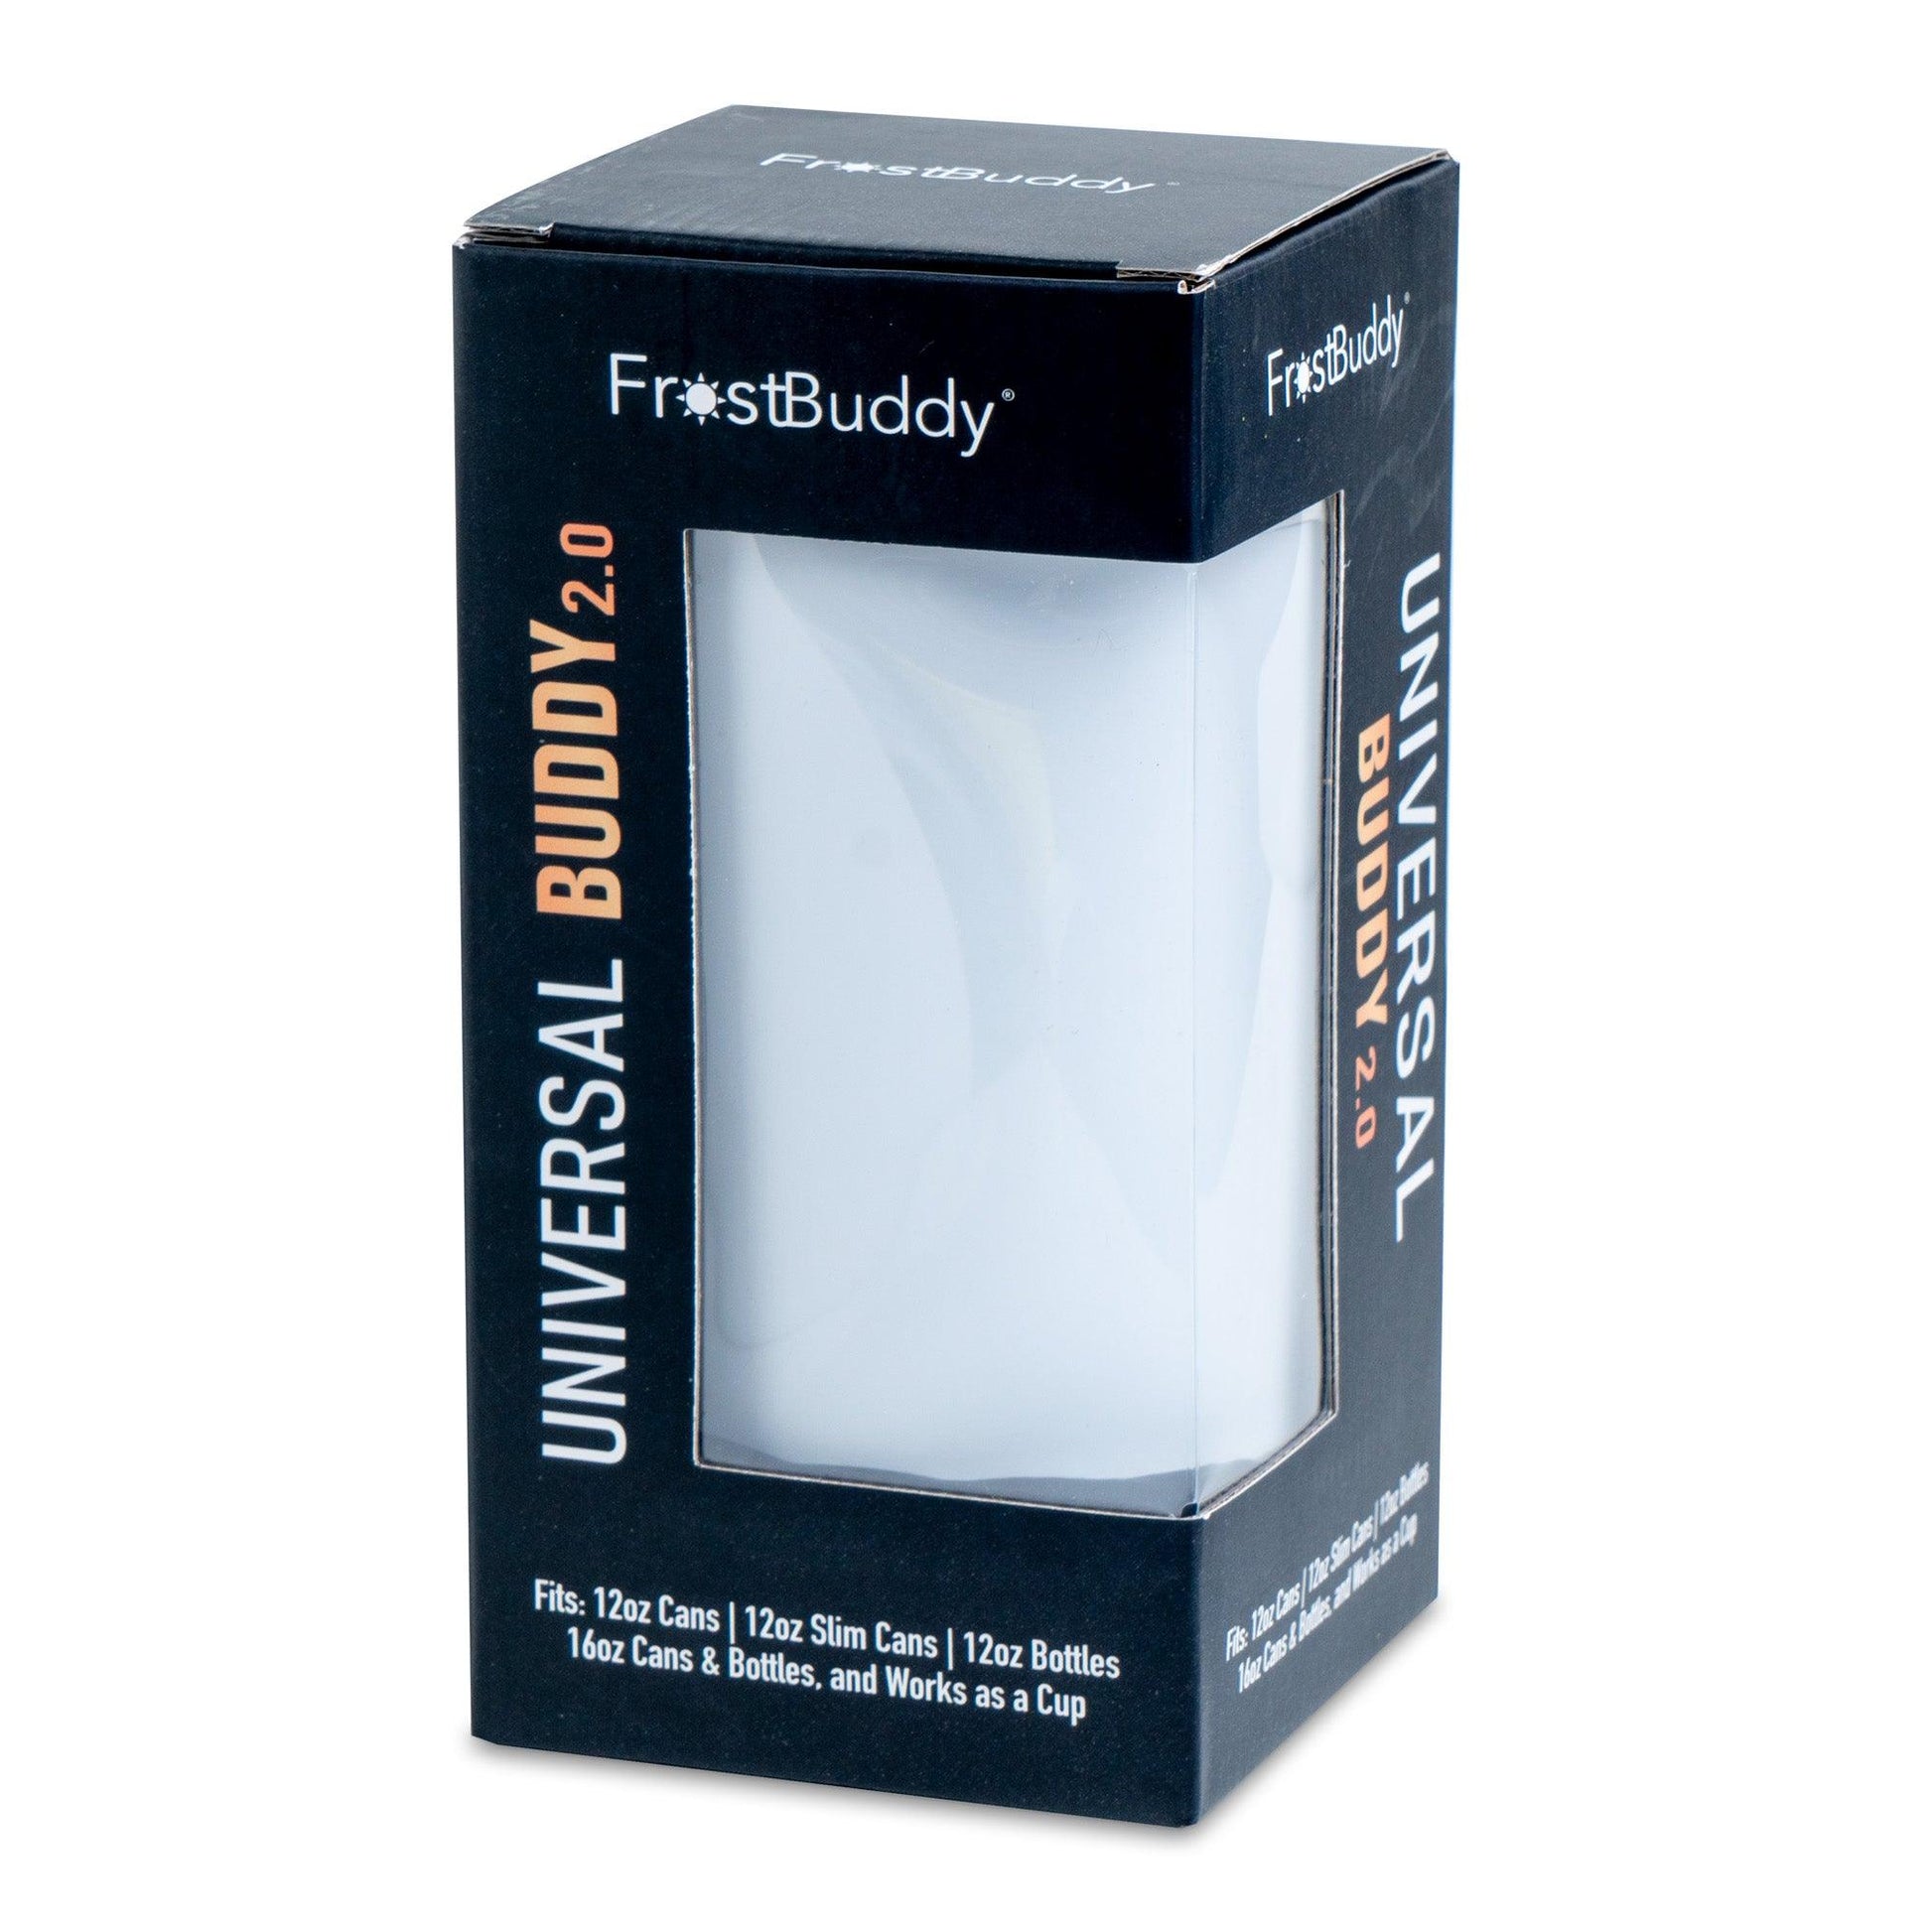  Frost Buddy Universal Buddy 2.0 164388